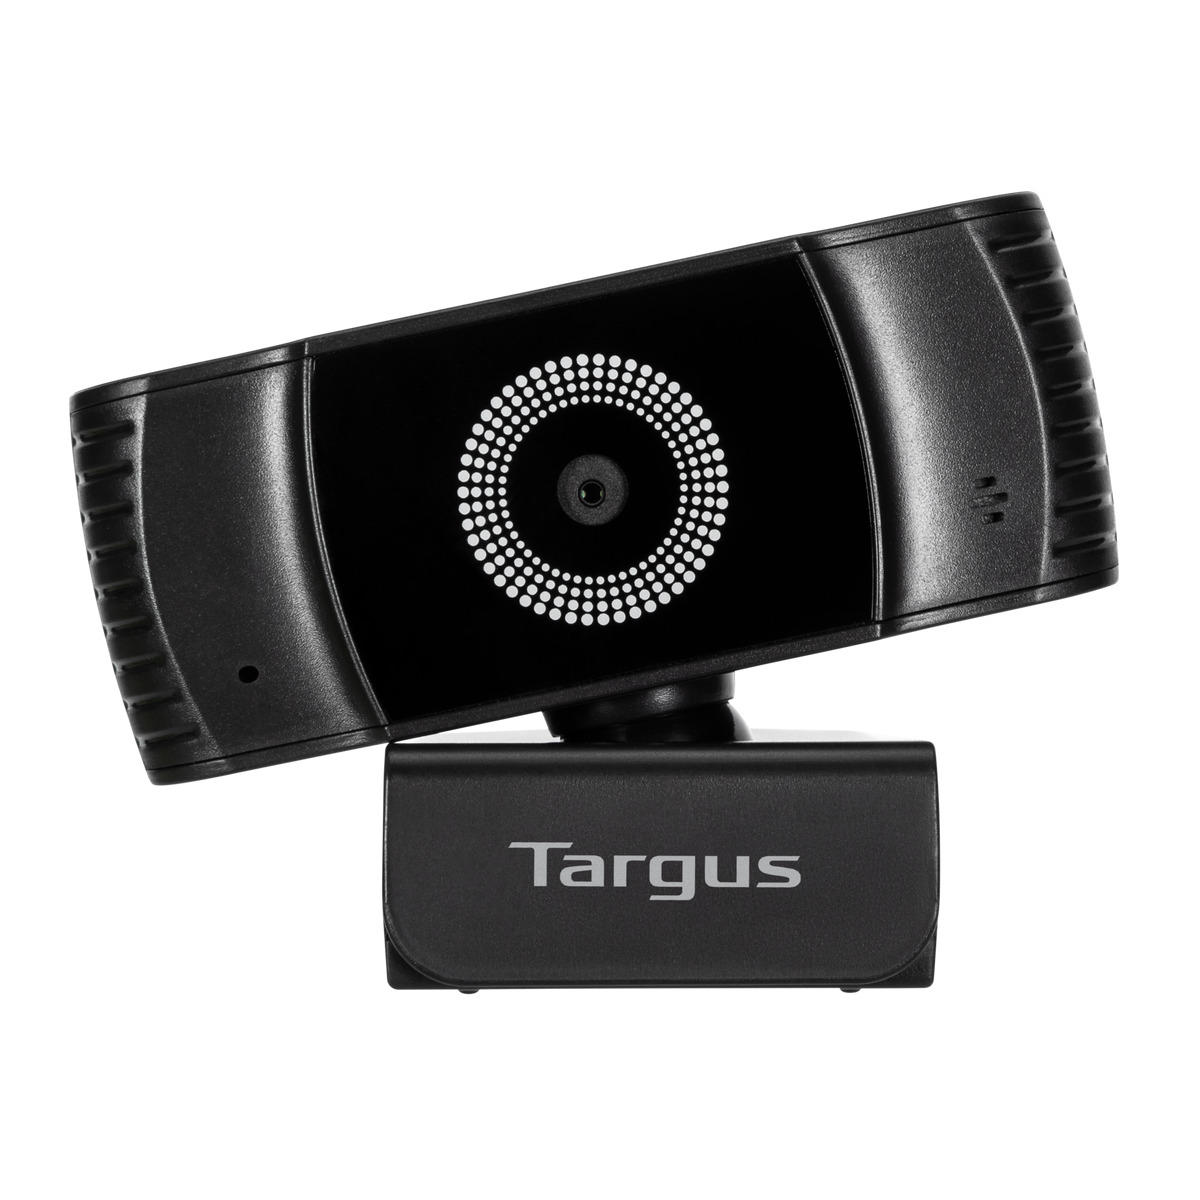  - Webcam HD Plus con enfoque automático Targus Negro 8